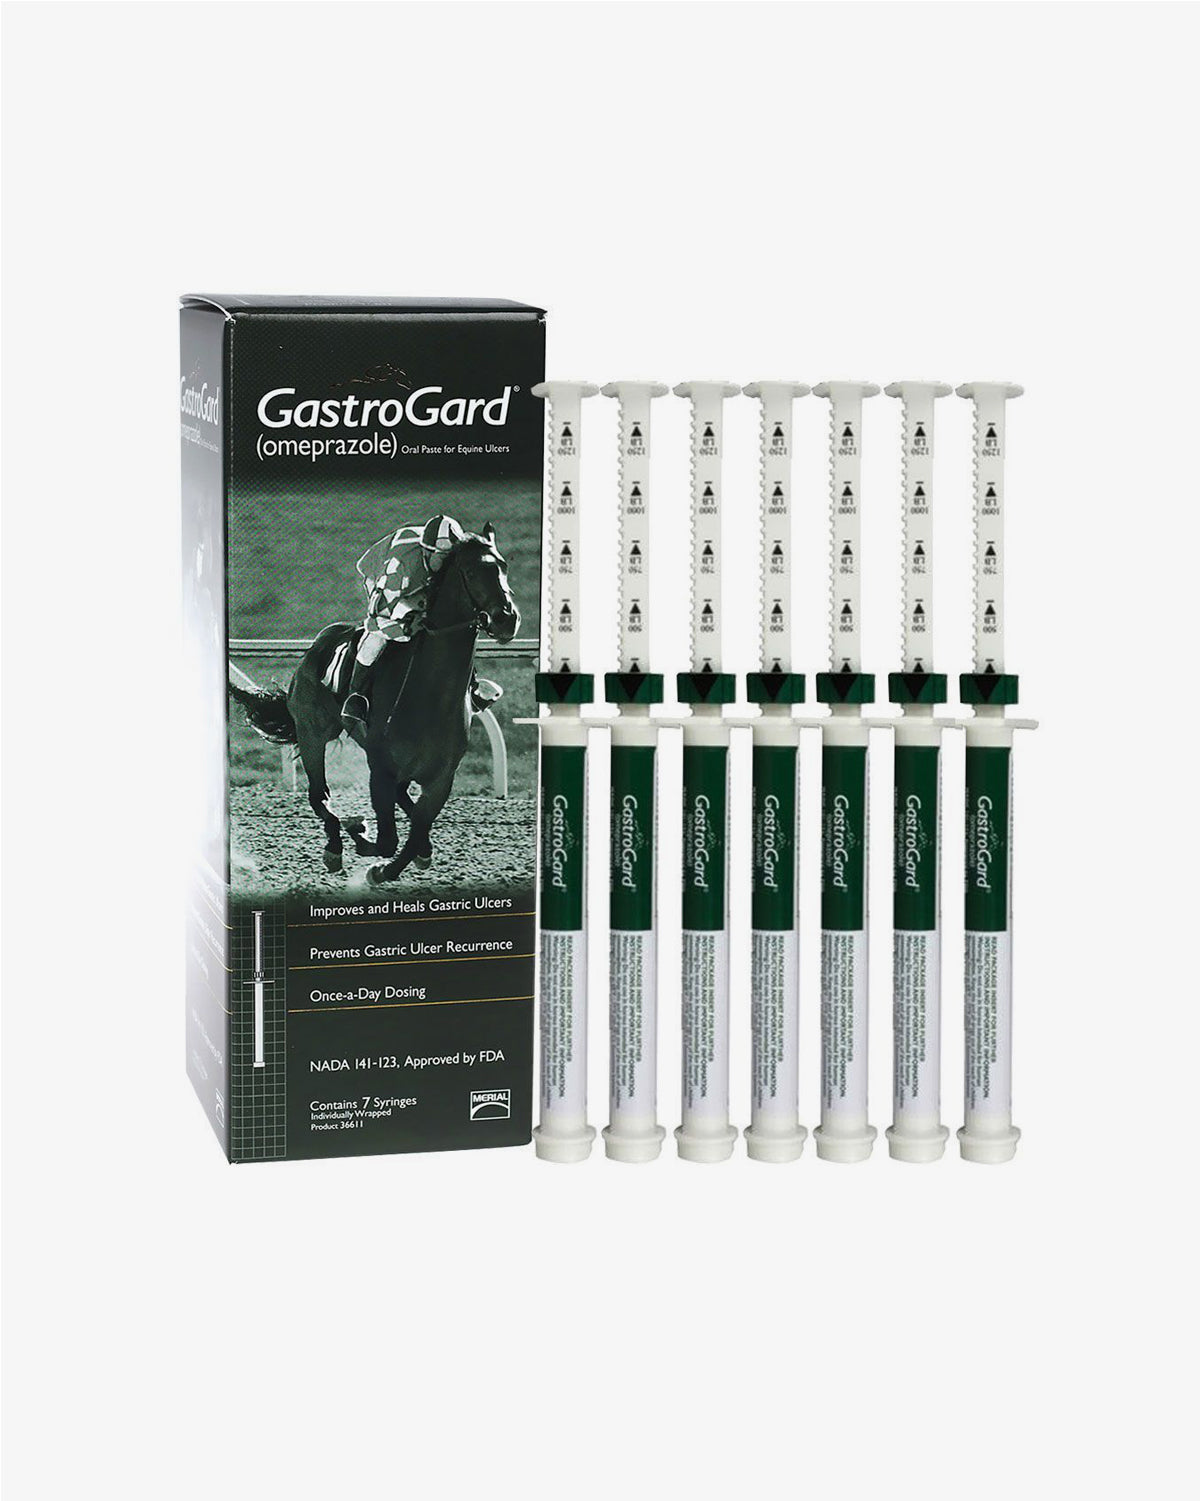 gastrogard-6-16-gms-by-boehringer-ingelheim-horse-care-online-in